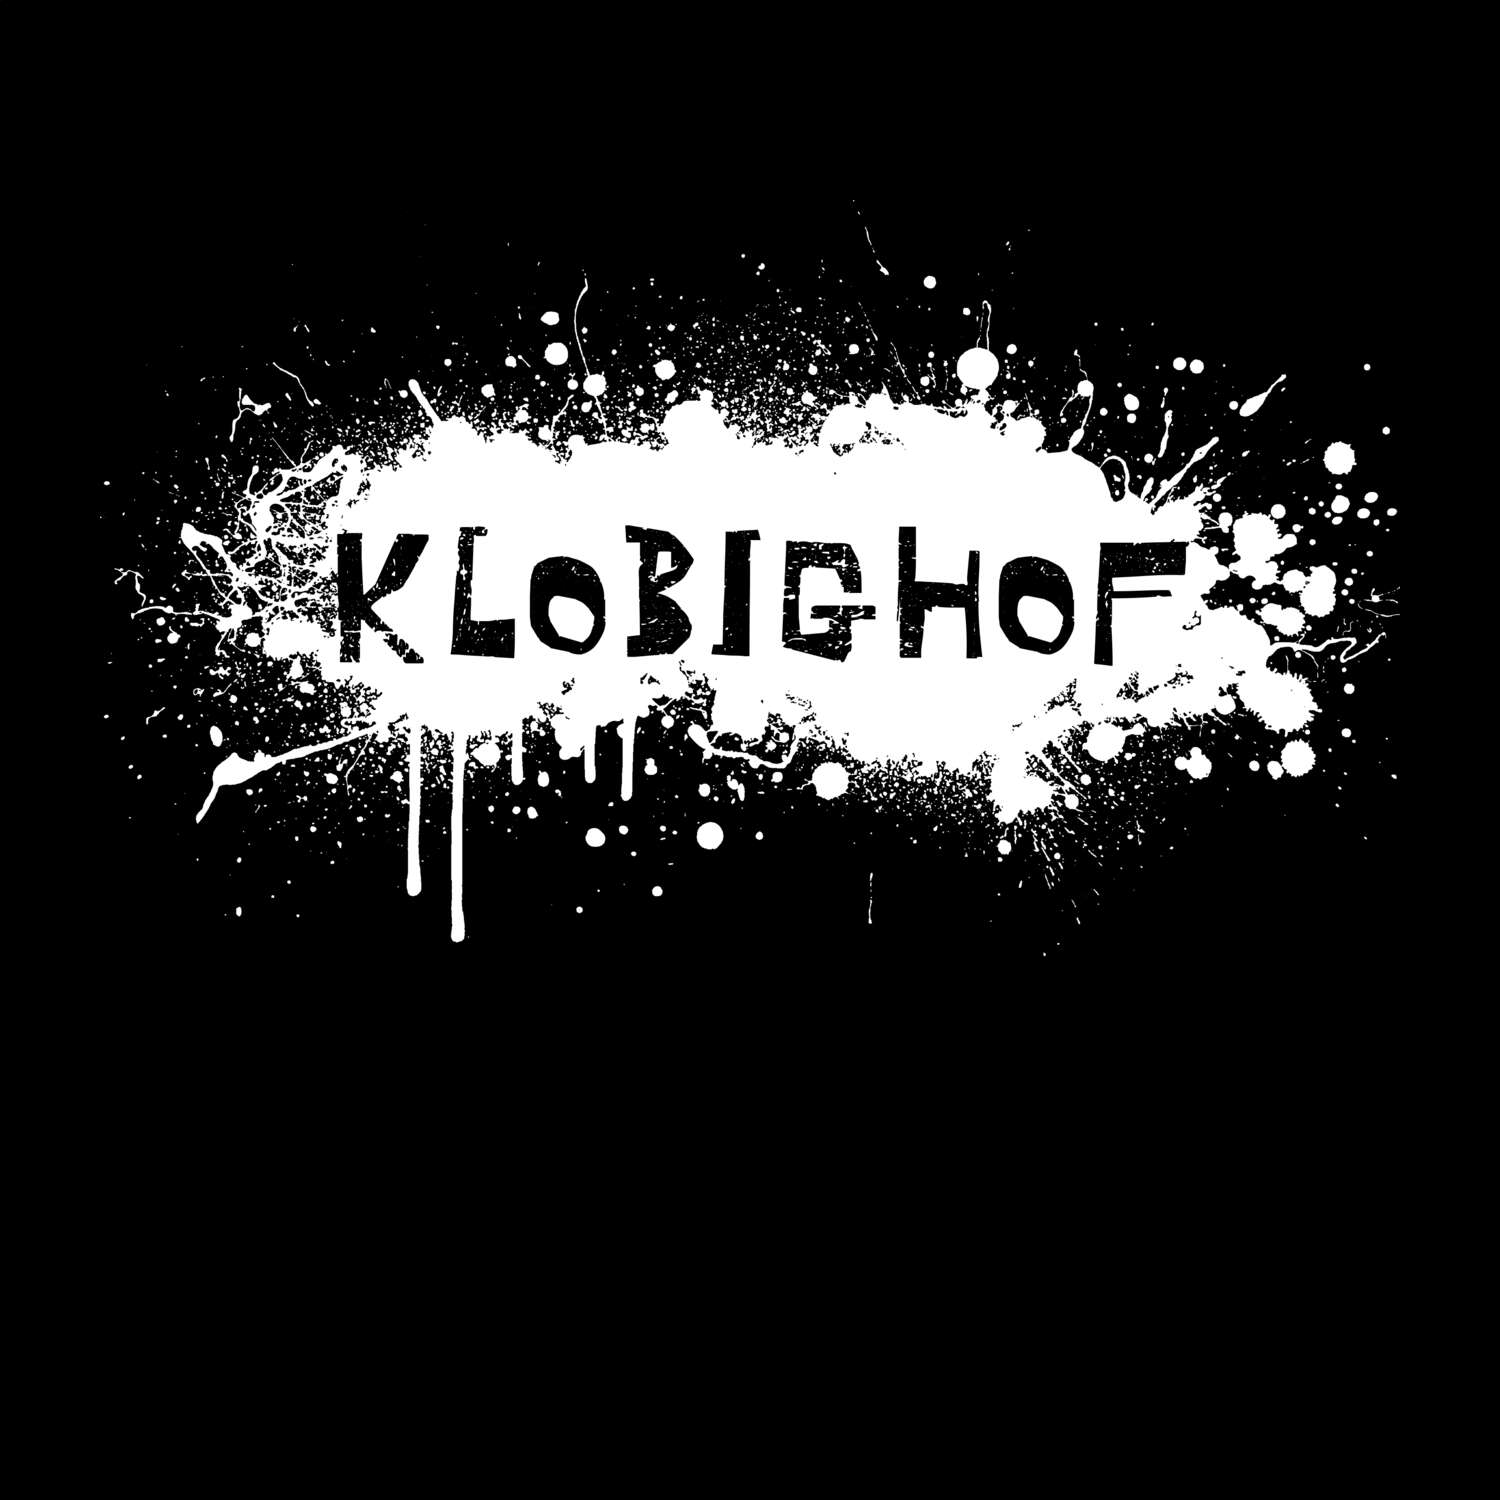 Klobighof T-Shirt »Paint Splash Punk«